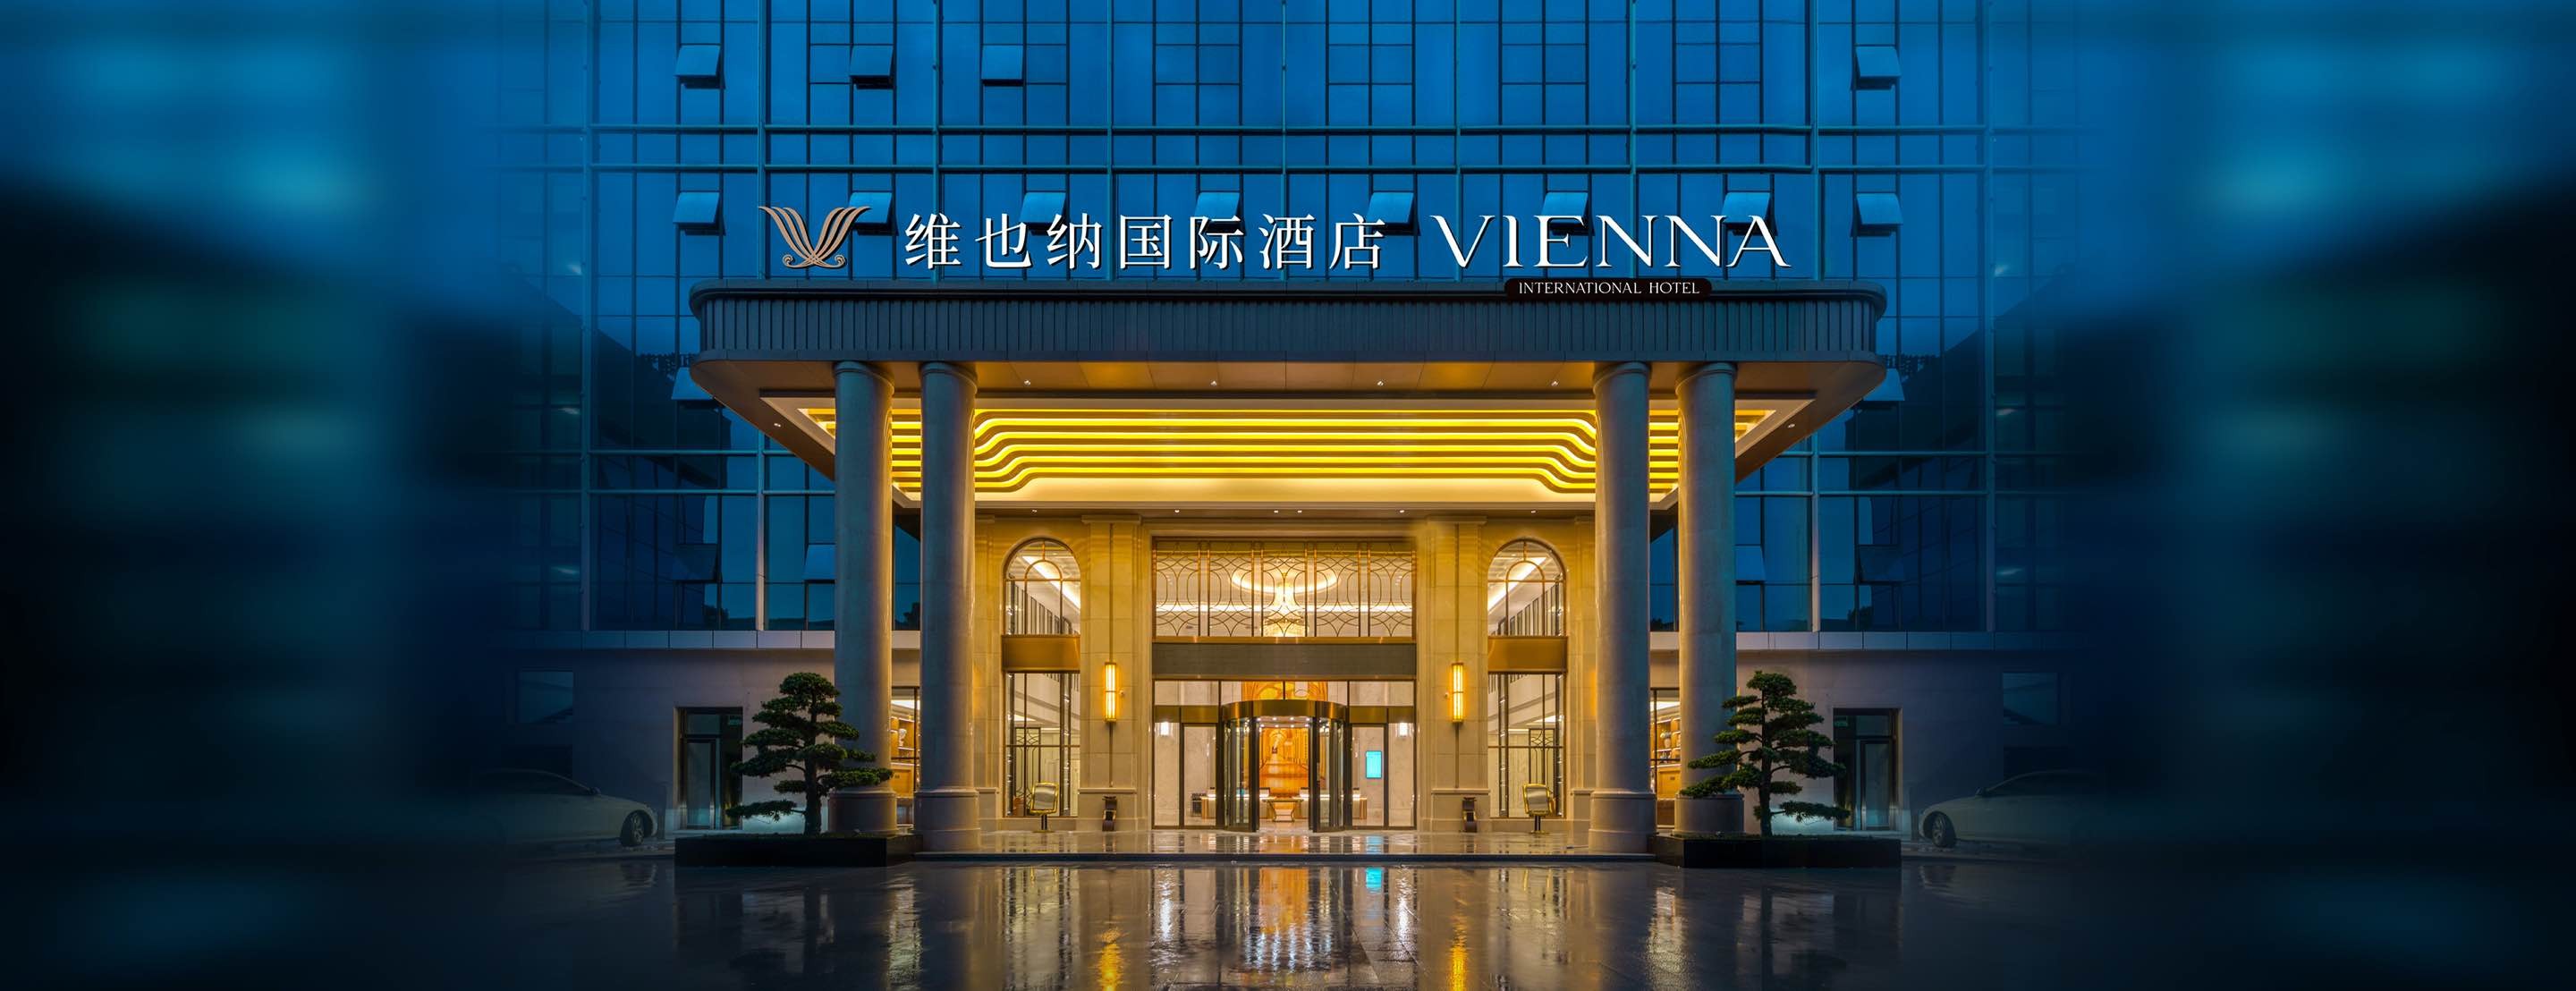 图:维也纳国际酒店新旧logologo焕新是品牌发展过程中的标志性事件,其